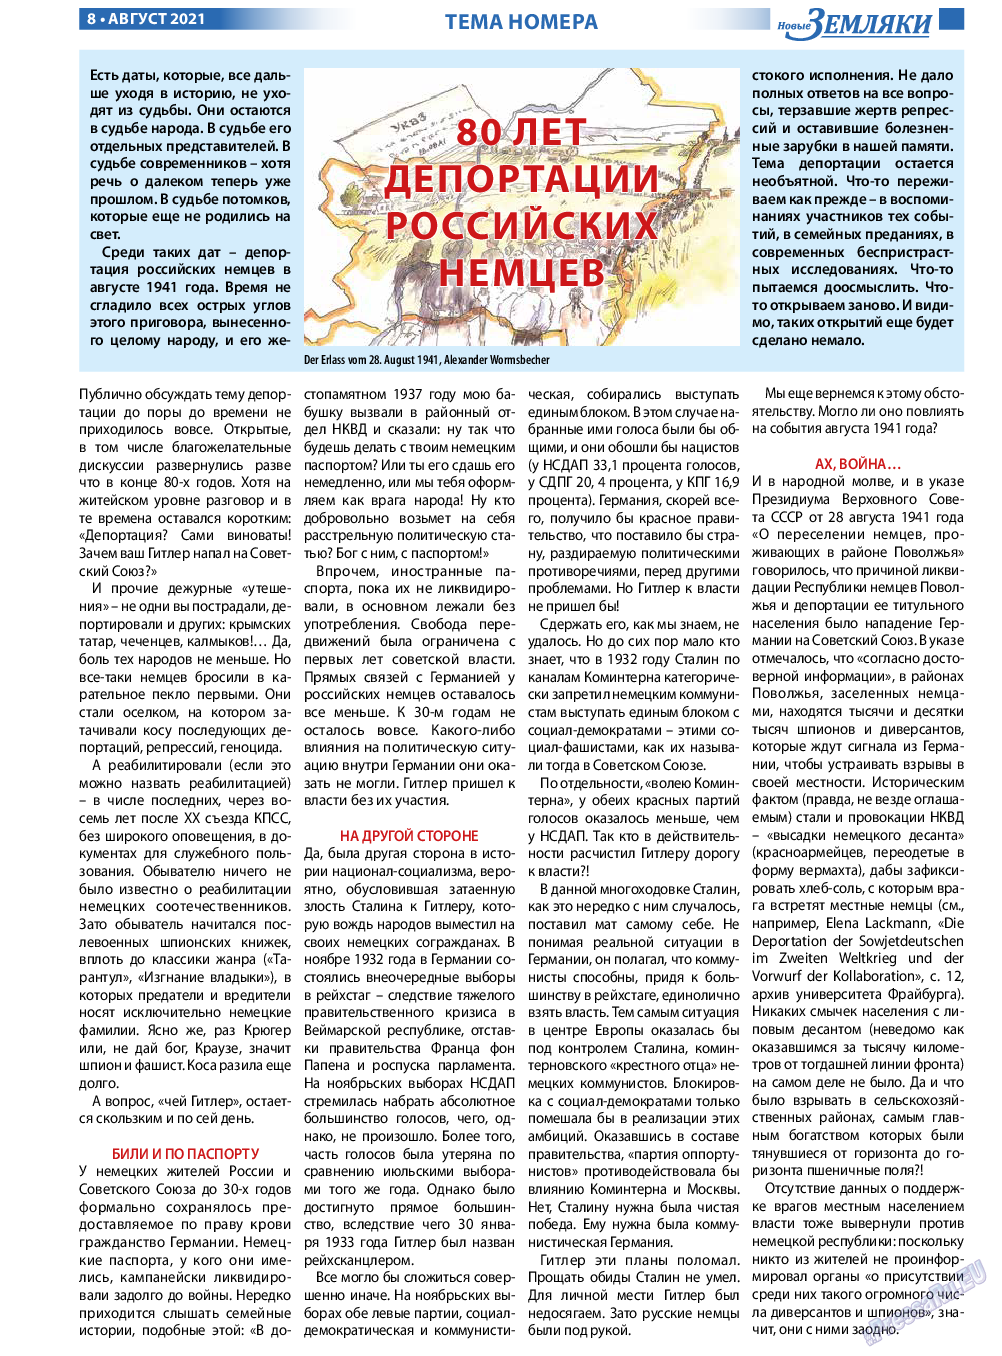 Новые Земляки, газета. 2021 №8 стр.8